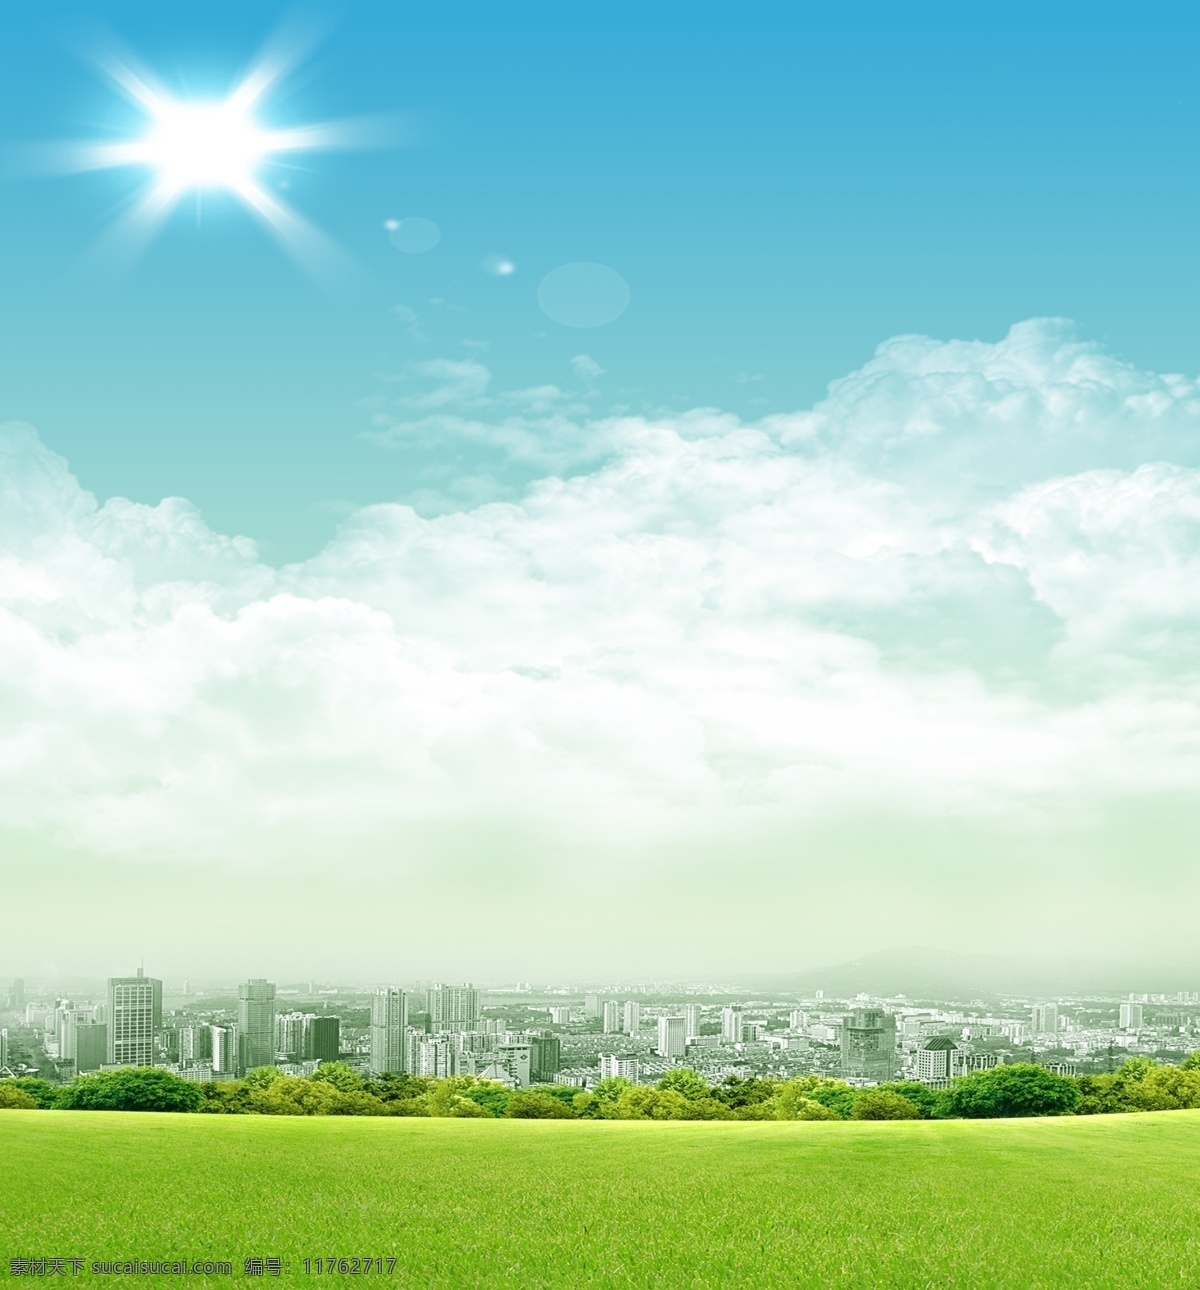 城市 草地 绿色 背景 春季广告 环保 草坪 郊外 白云 蓝天 度假 阳光 天蓝色